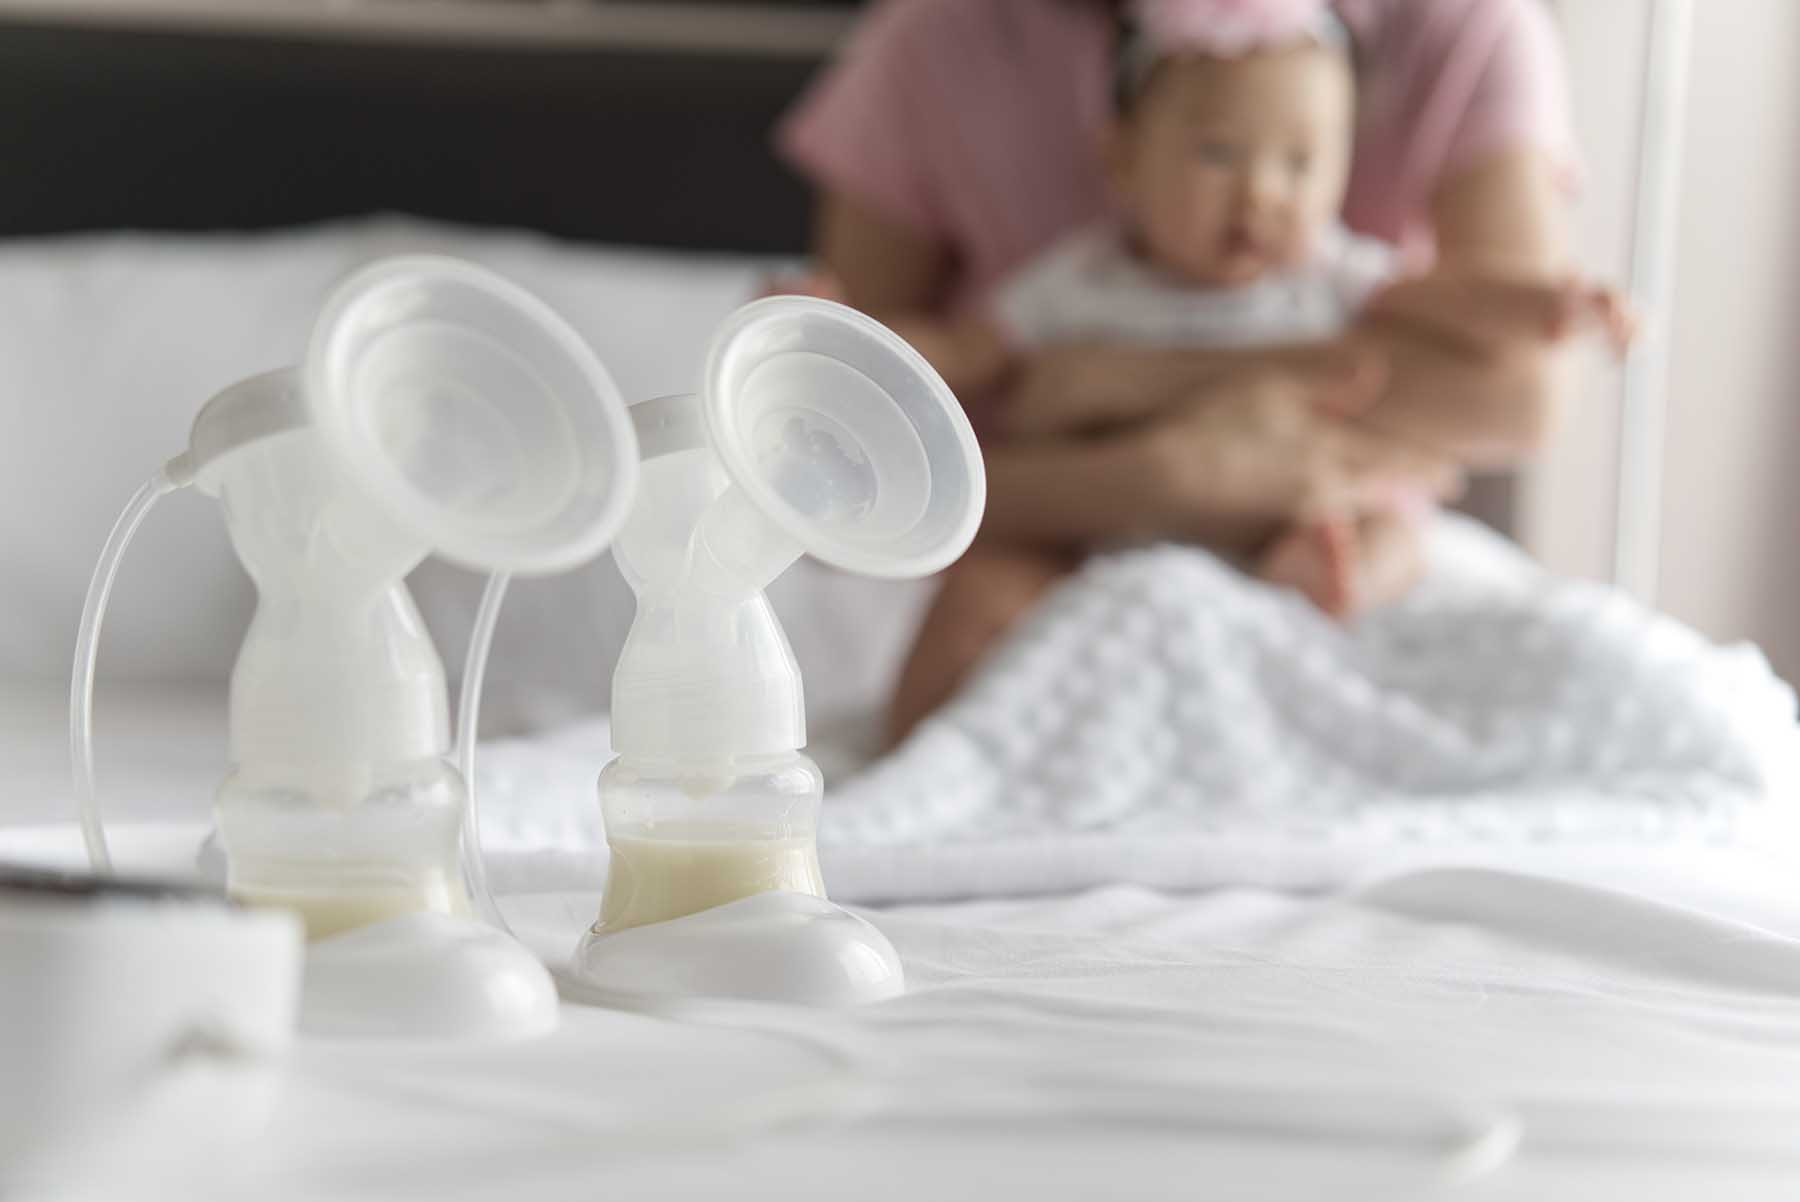 Consejos prácticos para la extracción de la leche materna